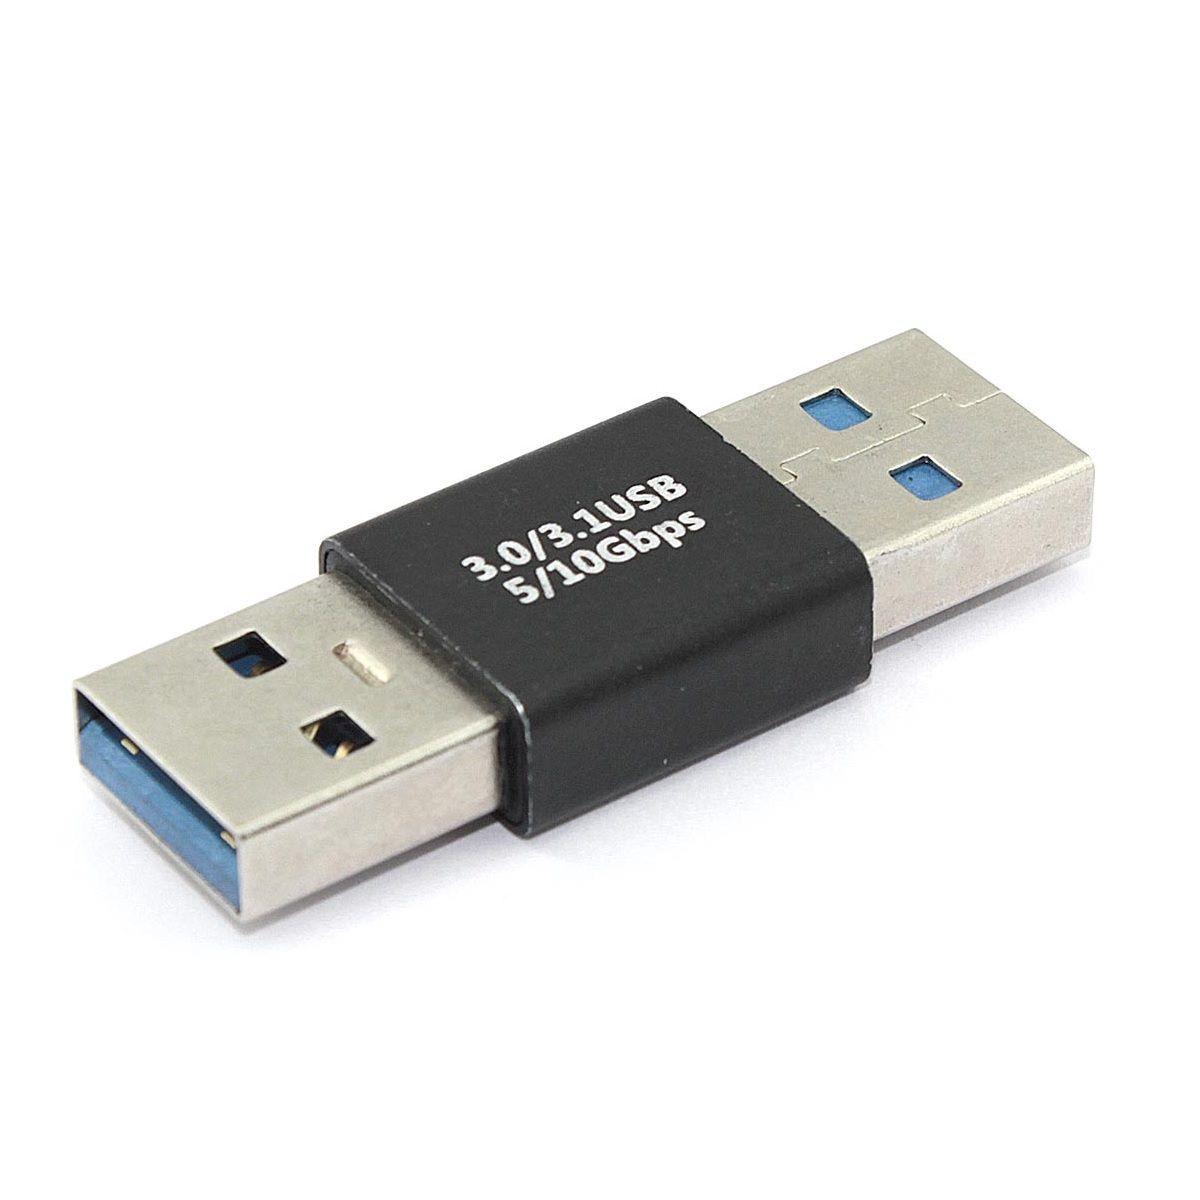 Удлинитель USB Type A папа-папа